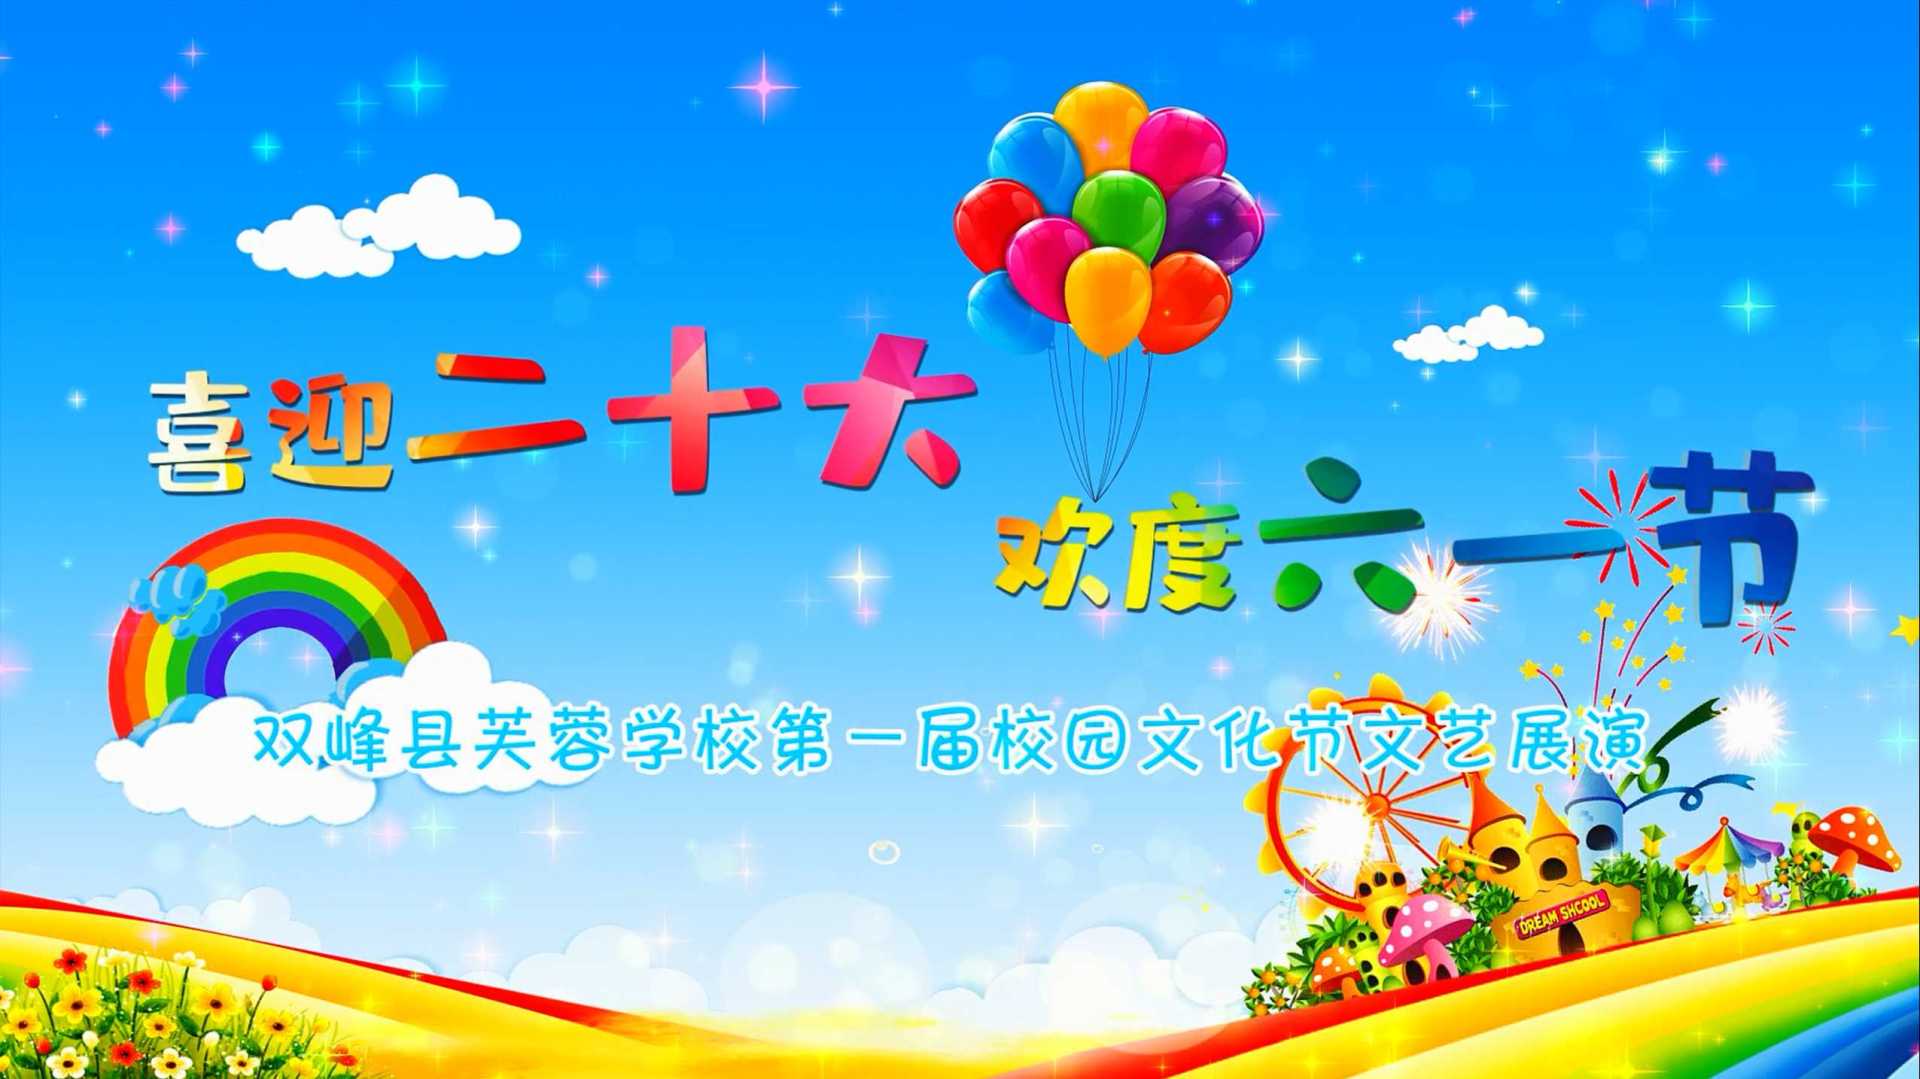 喜迎二十大 欢度六一节--双峰县芙蓉学校第一届校园文化节